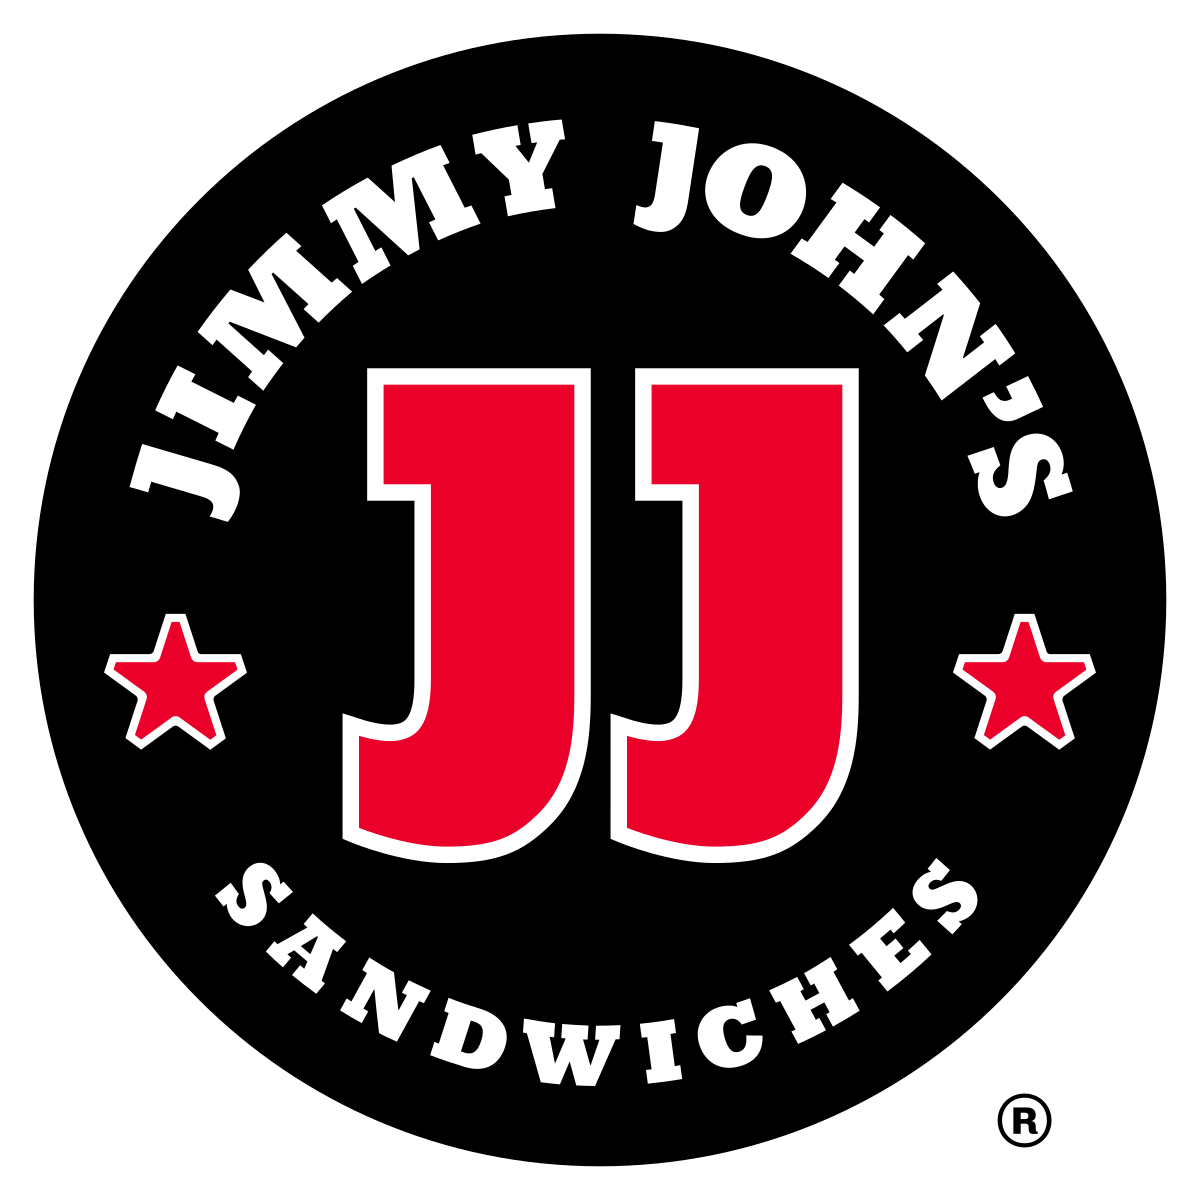 Jimmy_John's_(logo).svg.png